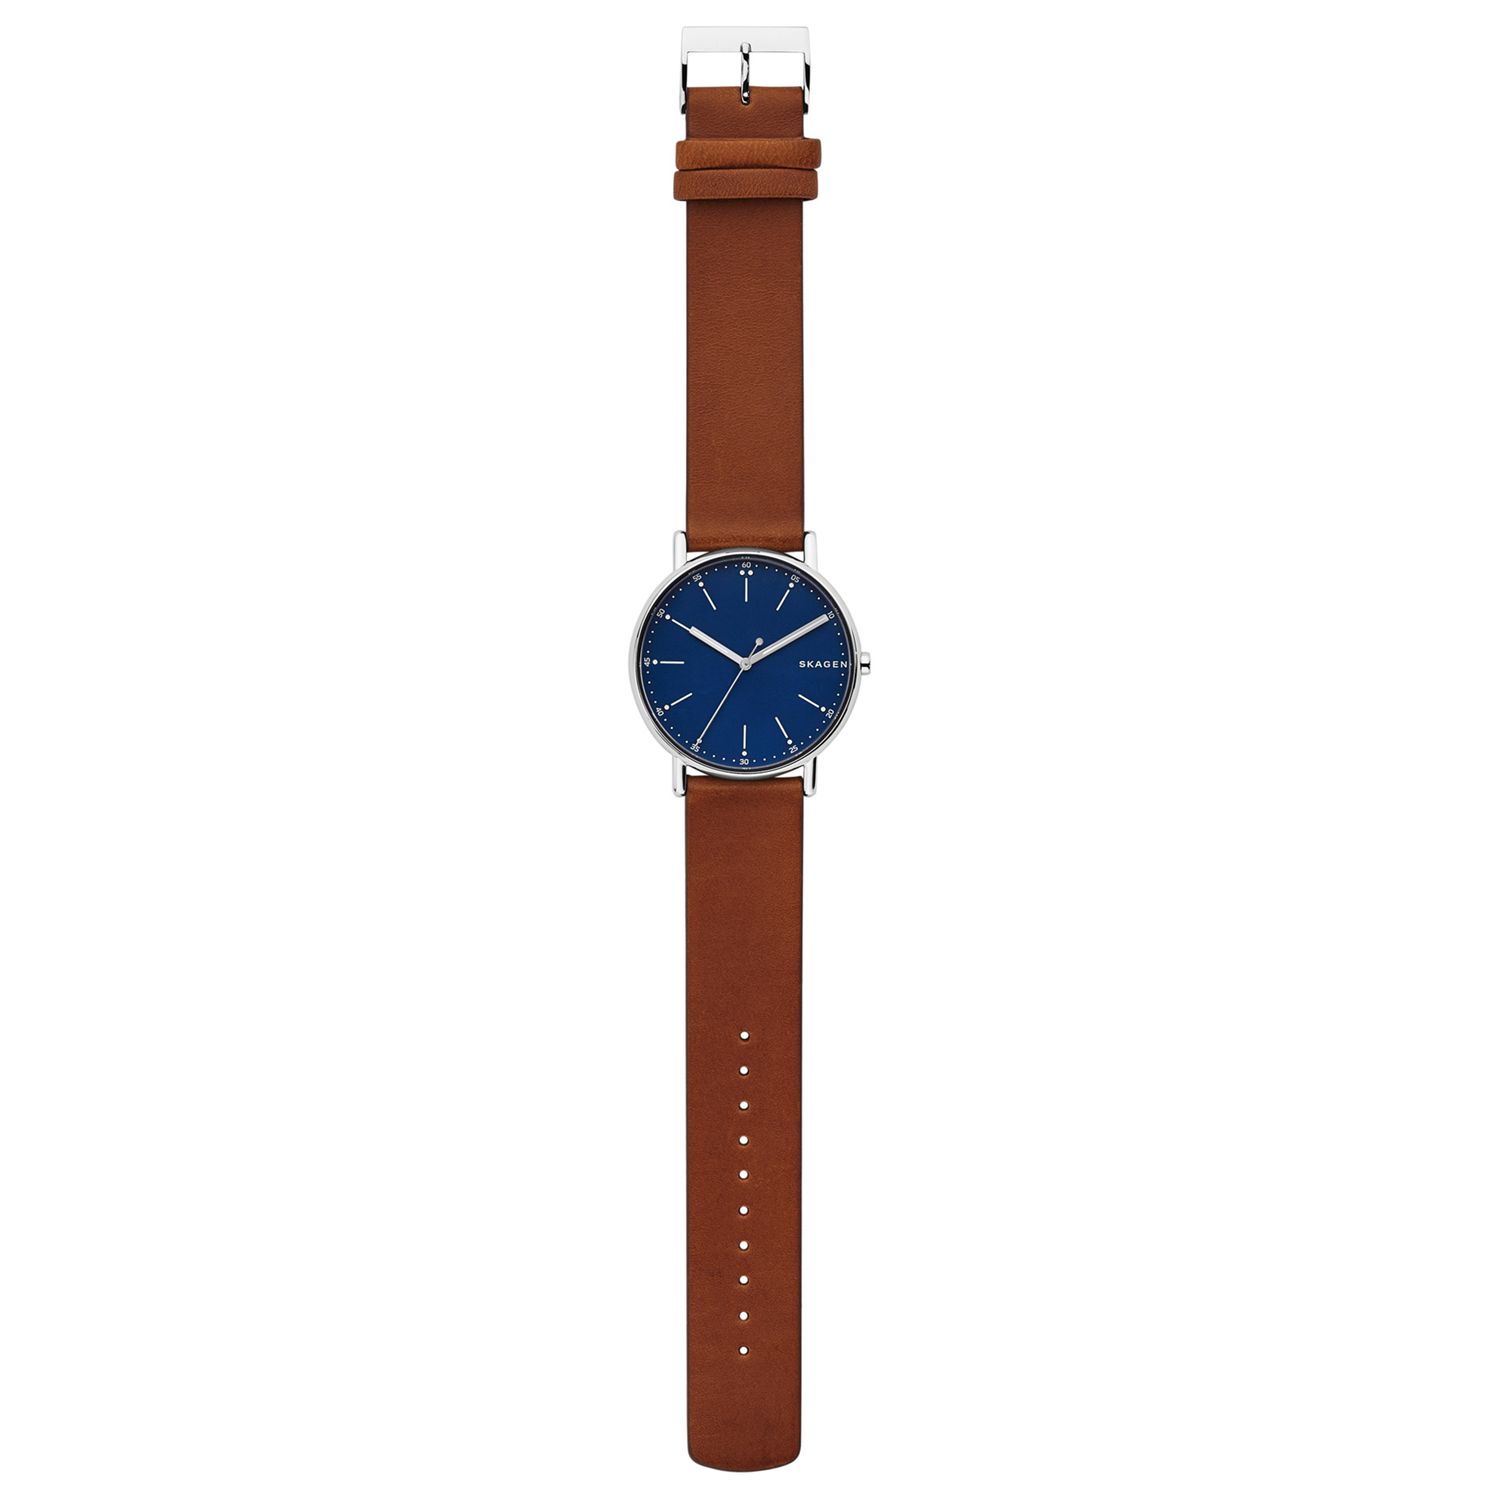 Skagen SKW6355 Men's Signatur Leather Strap Watch, Tan/Dark Blue